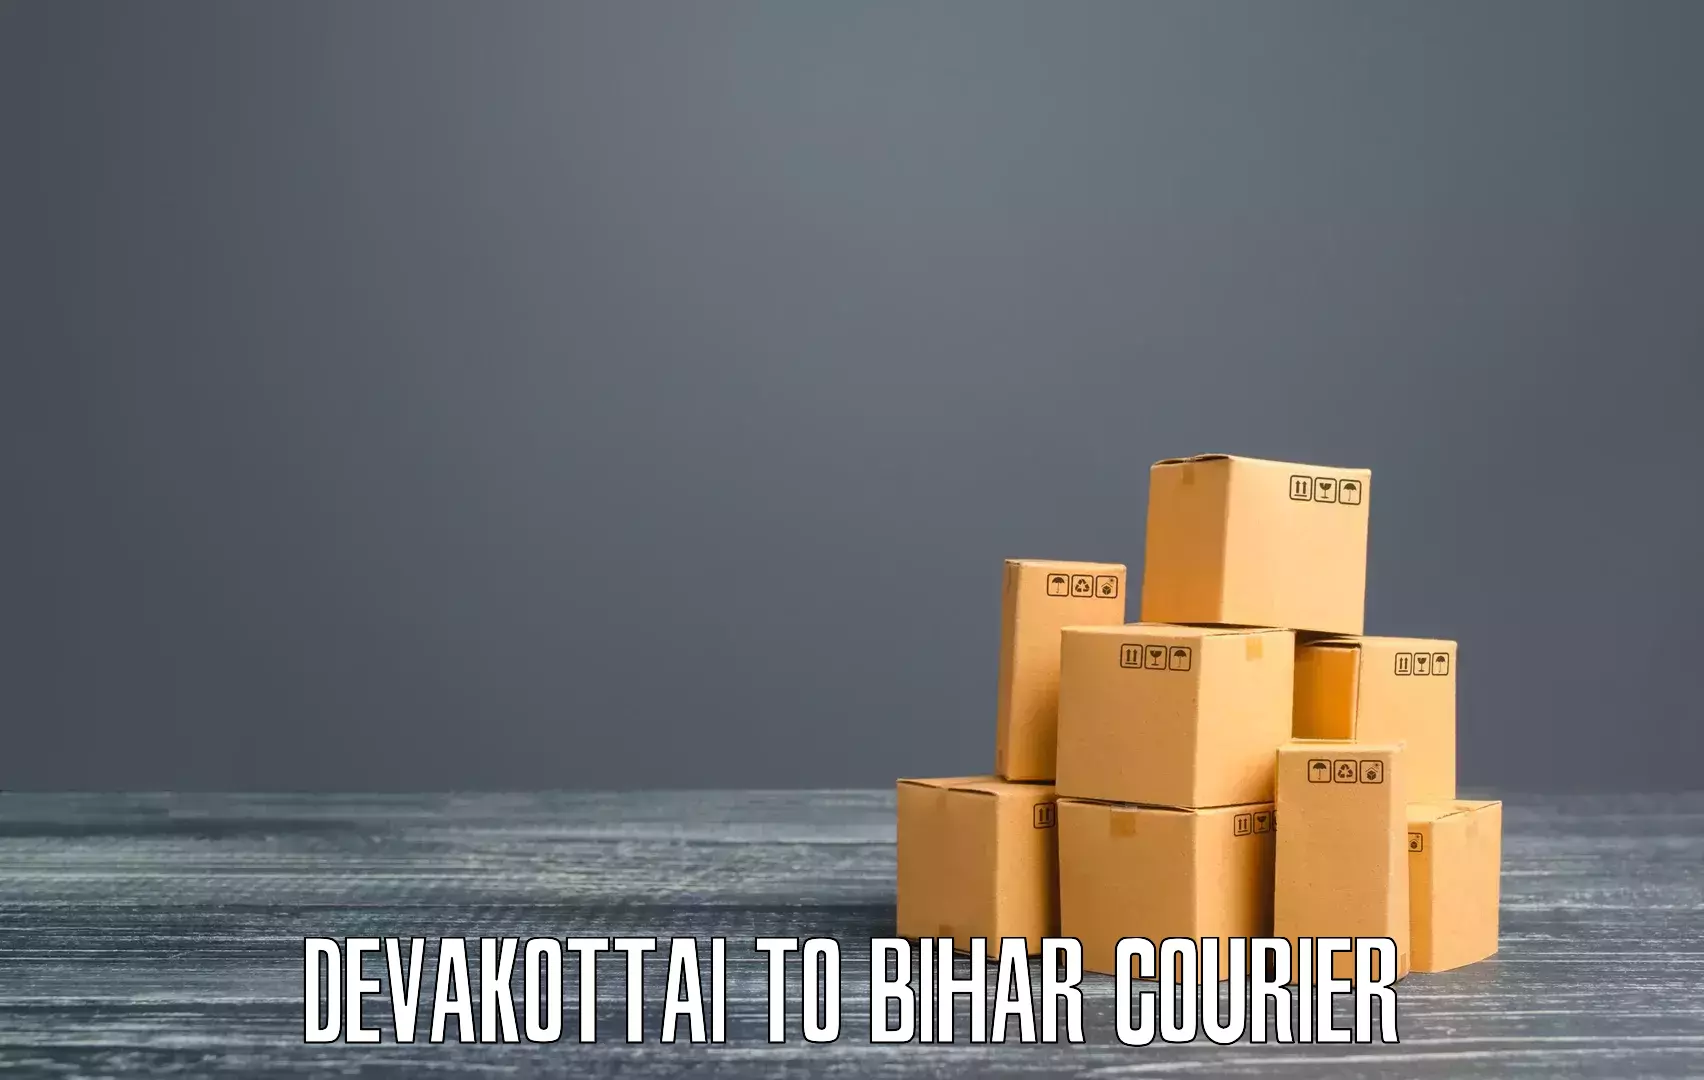 Urban courier service Devakottai to Bihar